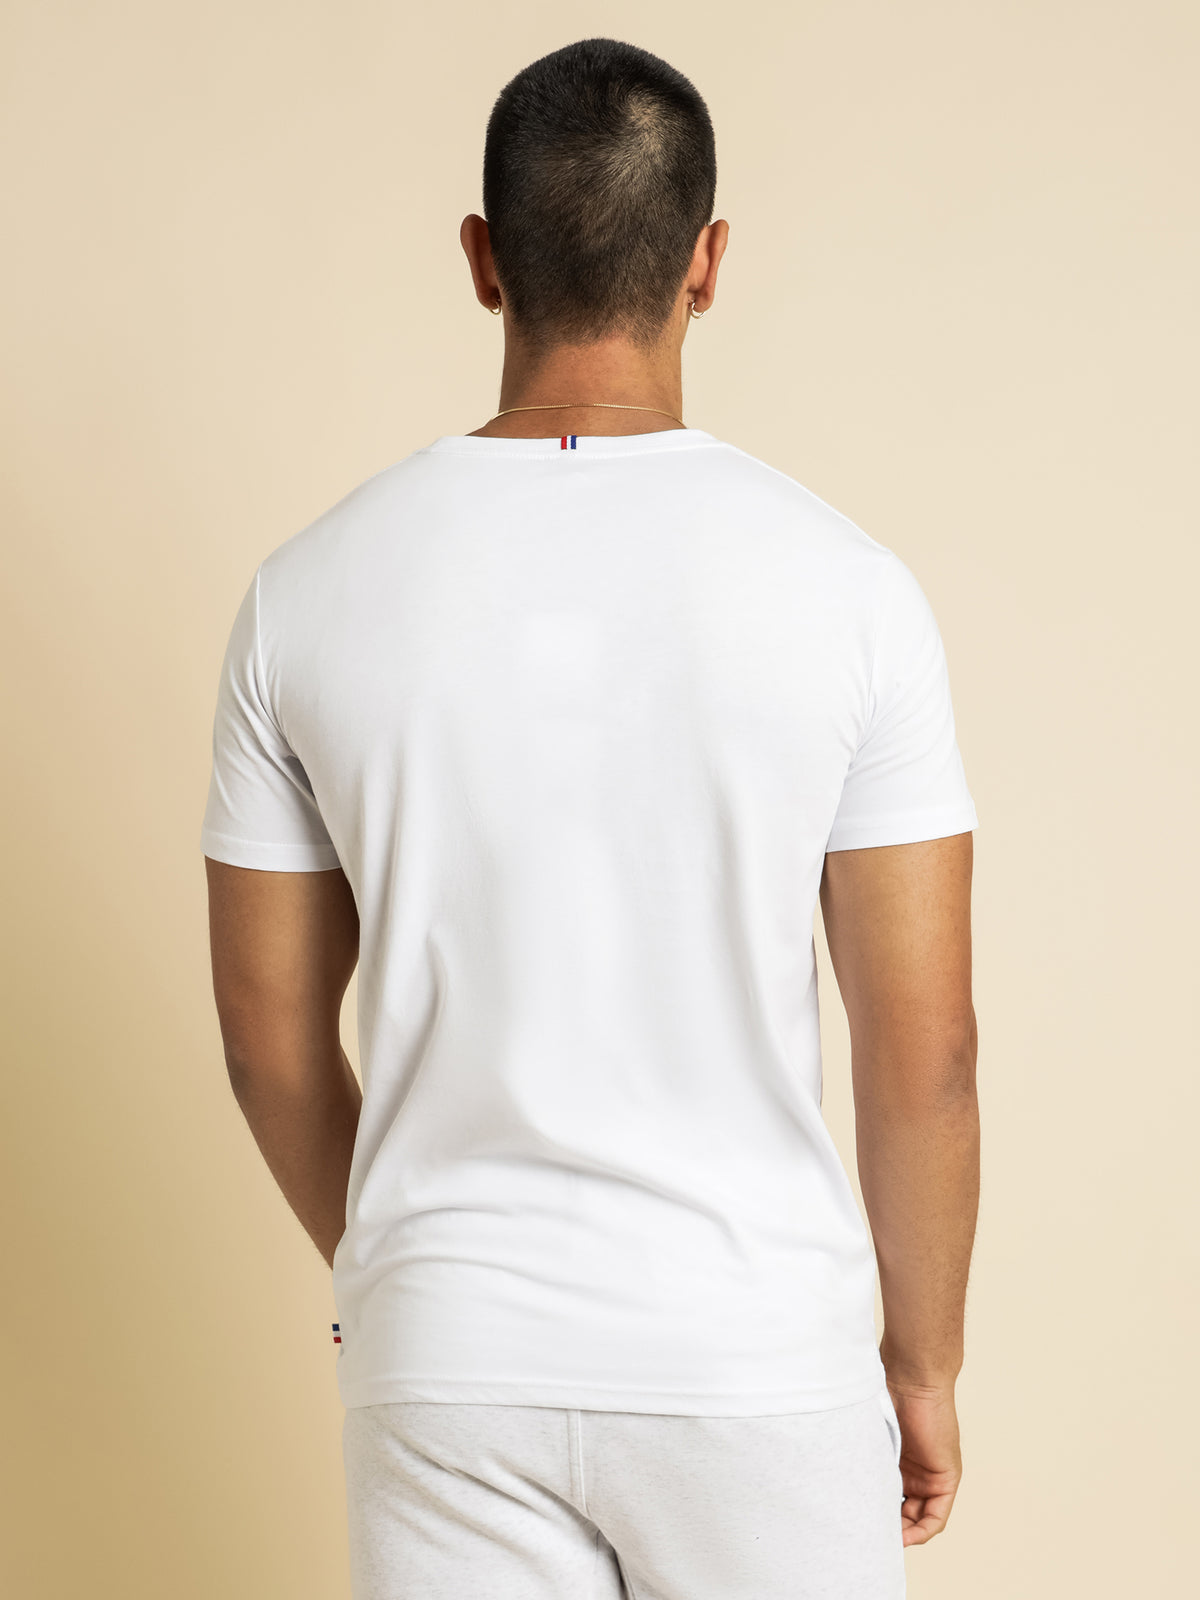 Roissey Foil T-Shirt in White